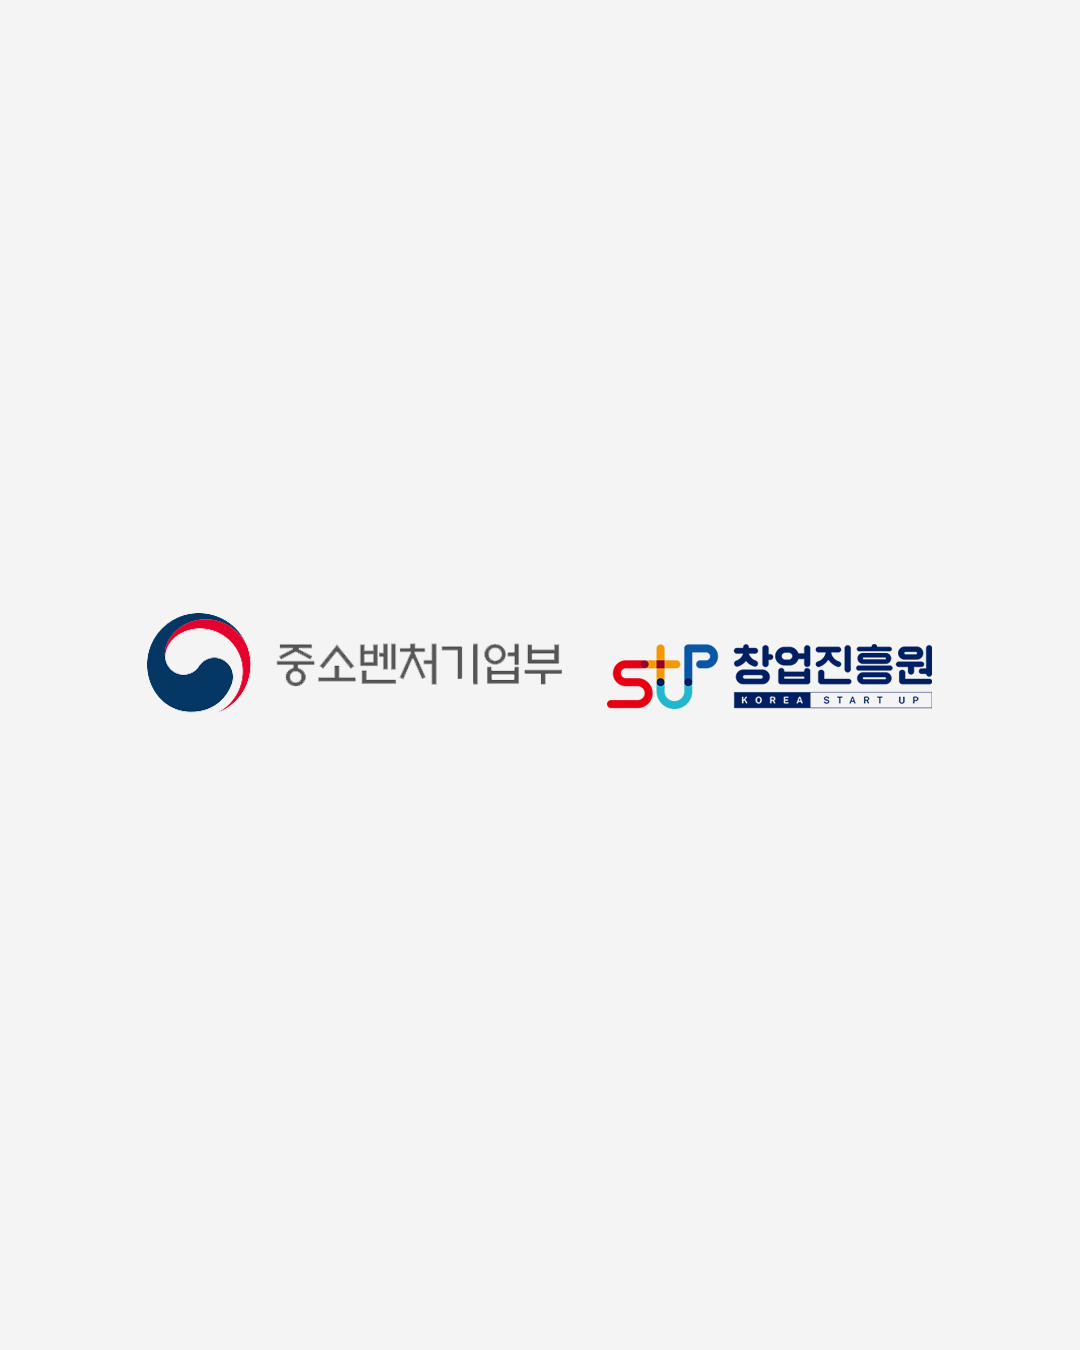 중소벤처기업부(로고), 창업진흥원(로고)